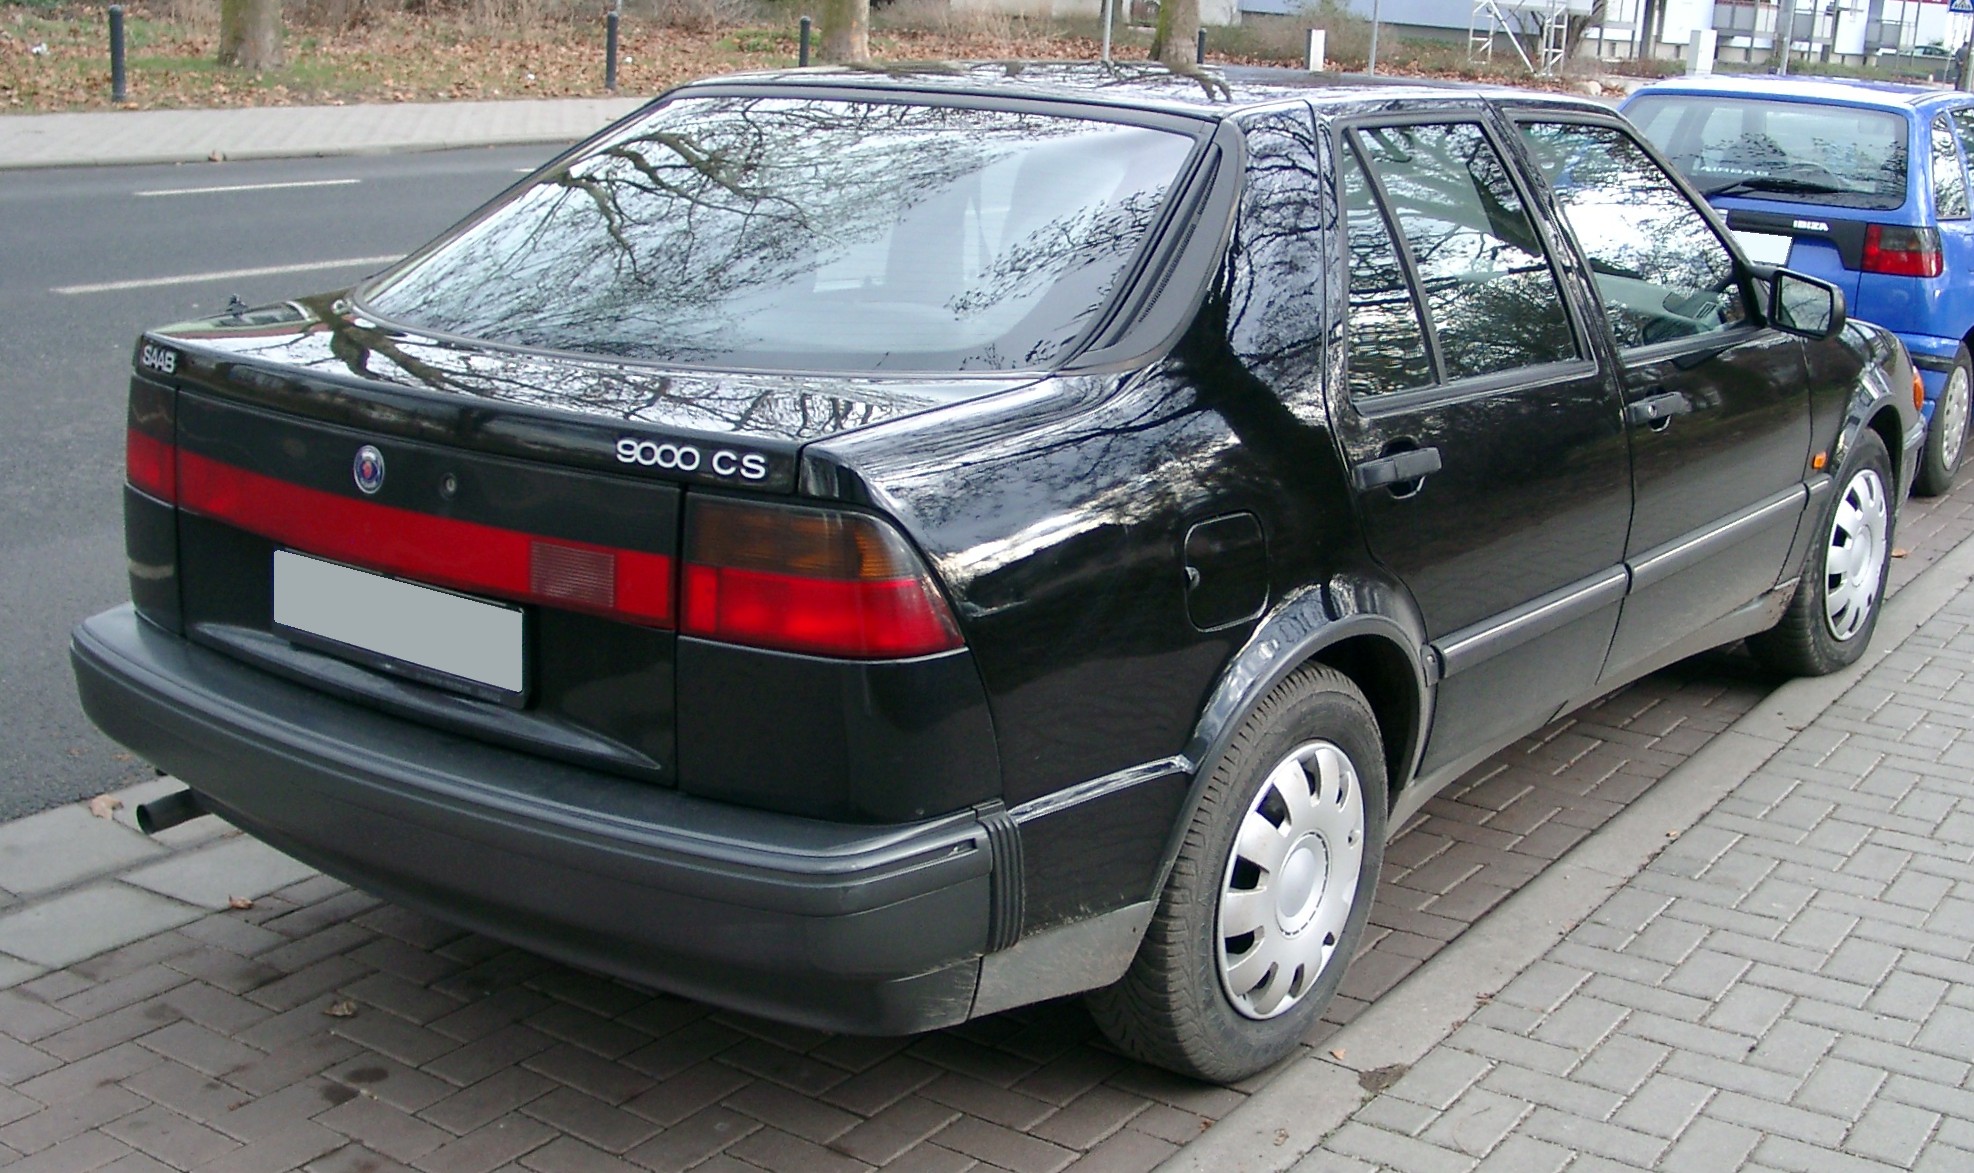 File:Saab 9000 CS rear 20080111.jpg